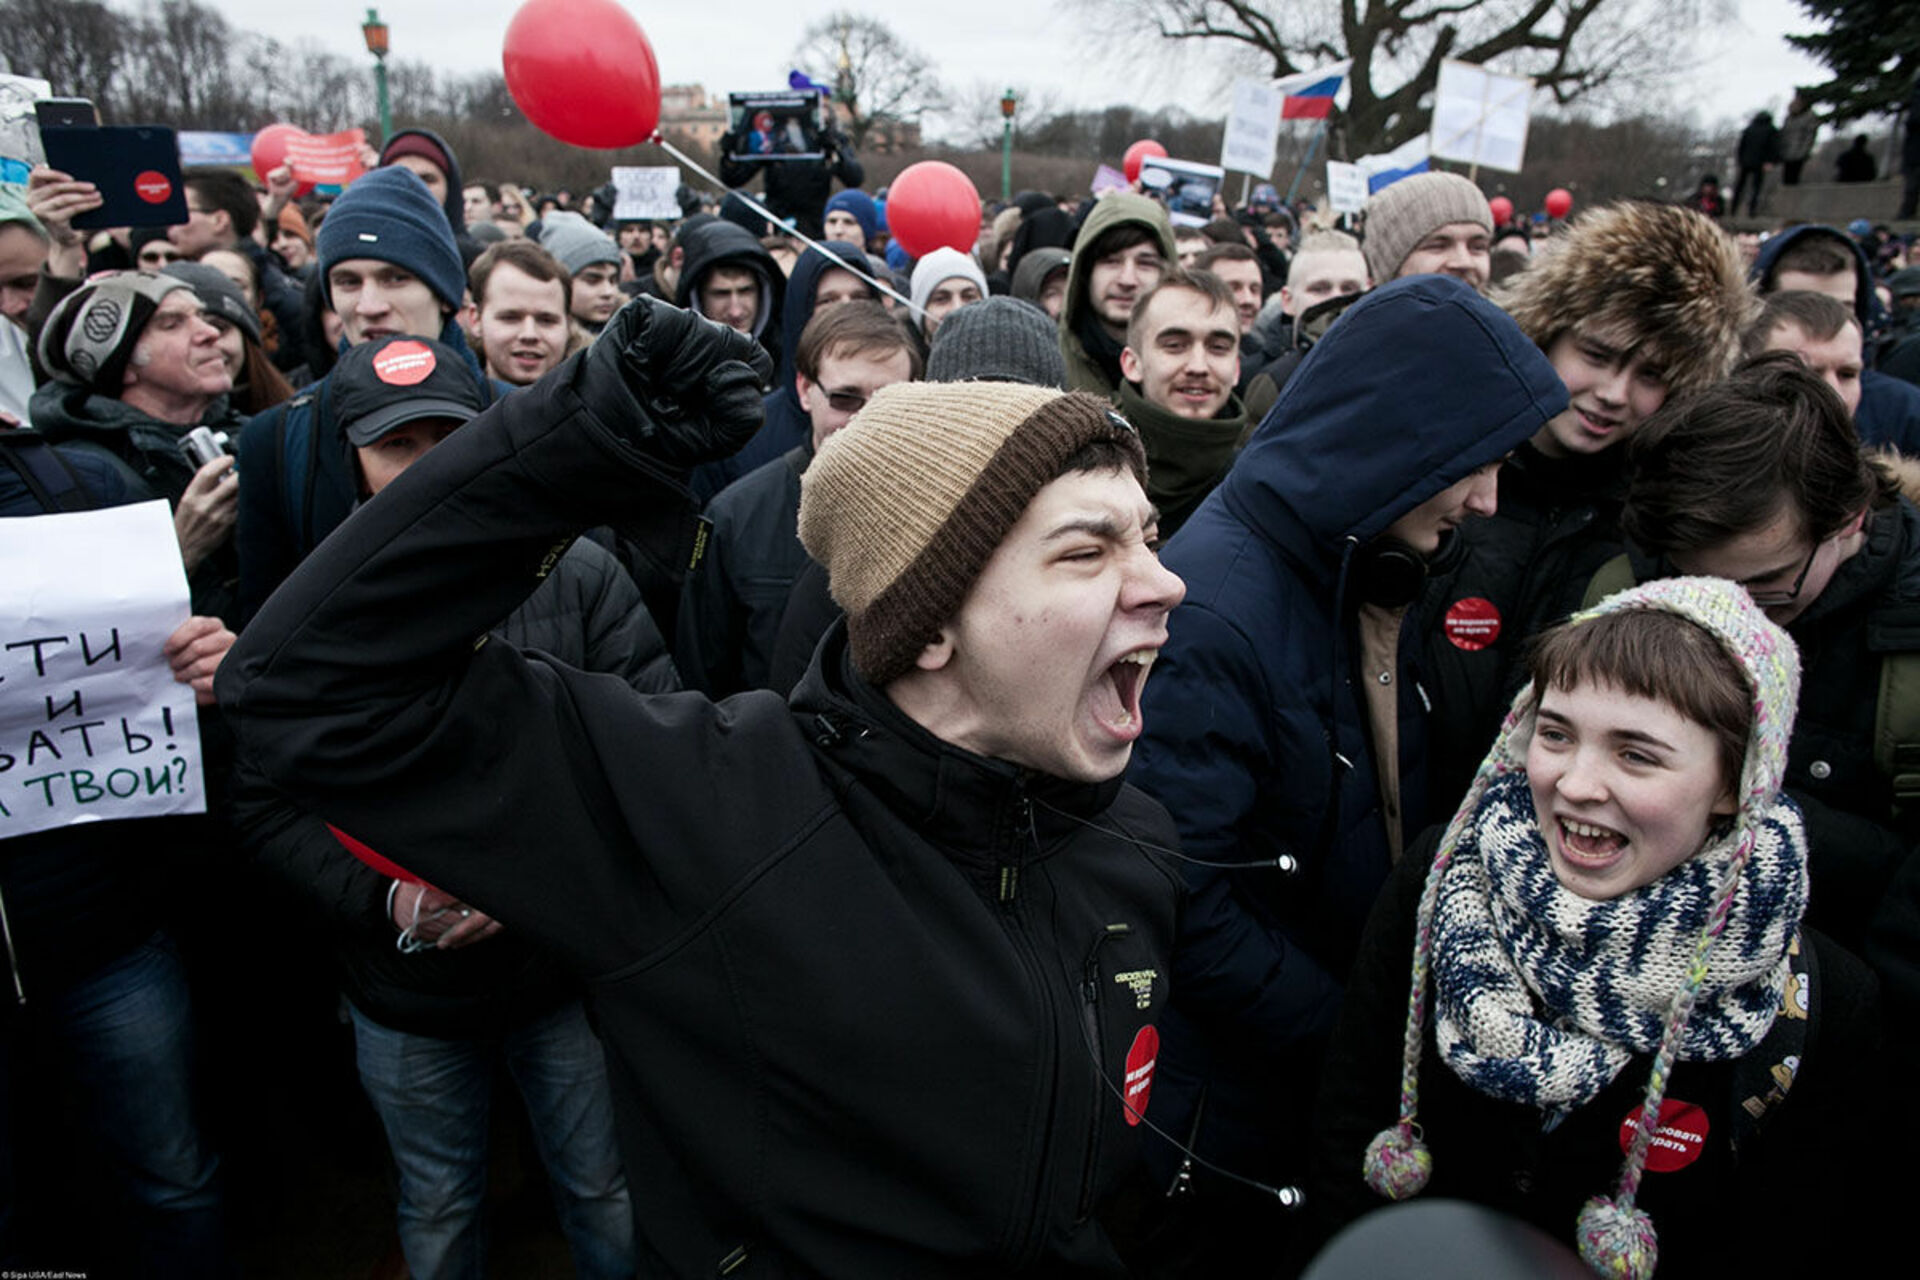 C митинг. Дети на митинге. Подростки на митинге Навального. Школьники на митинге Навального. Кричит на митинге.